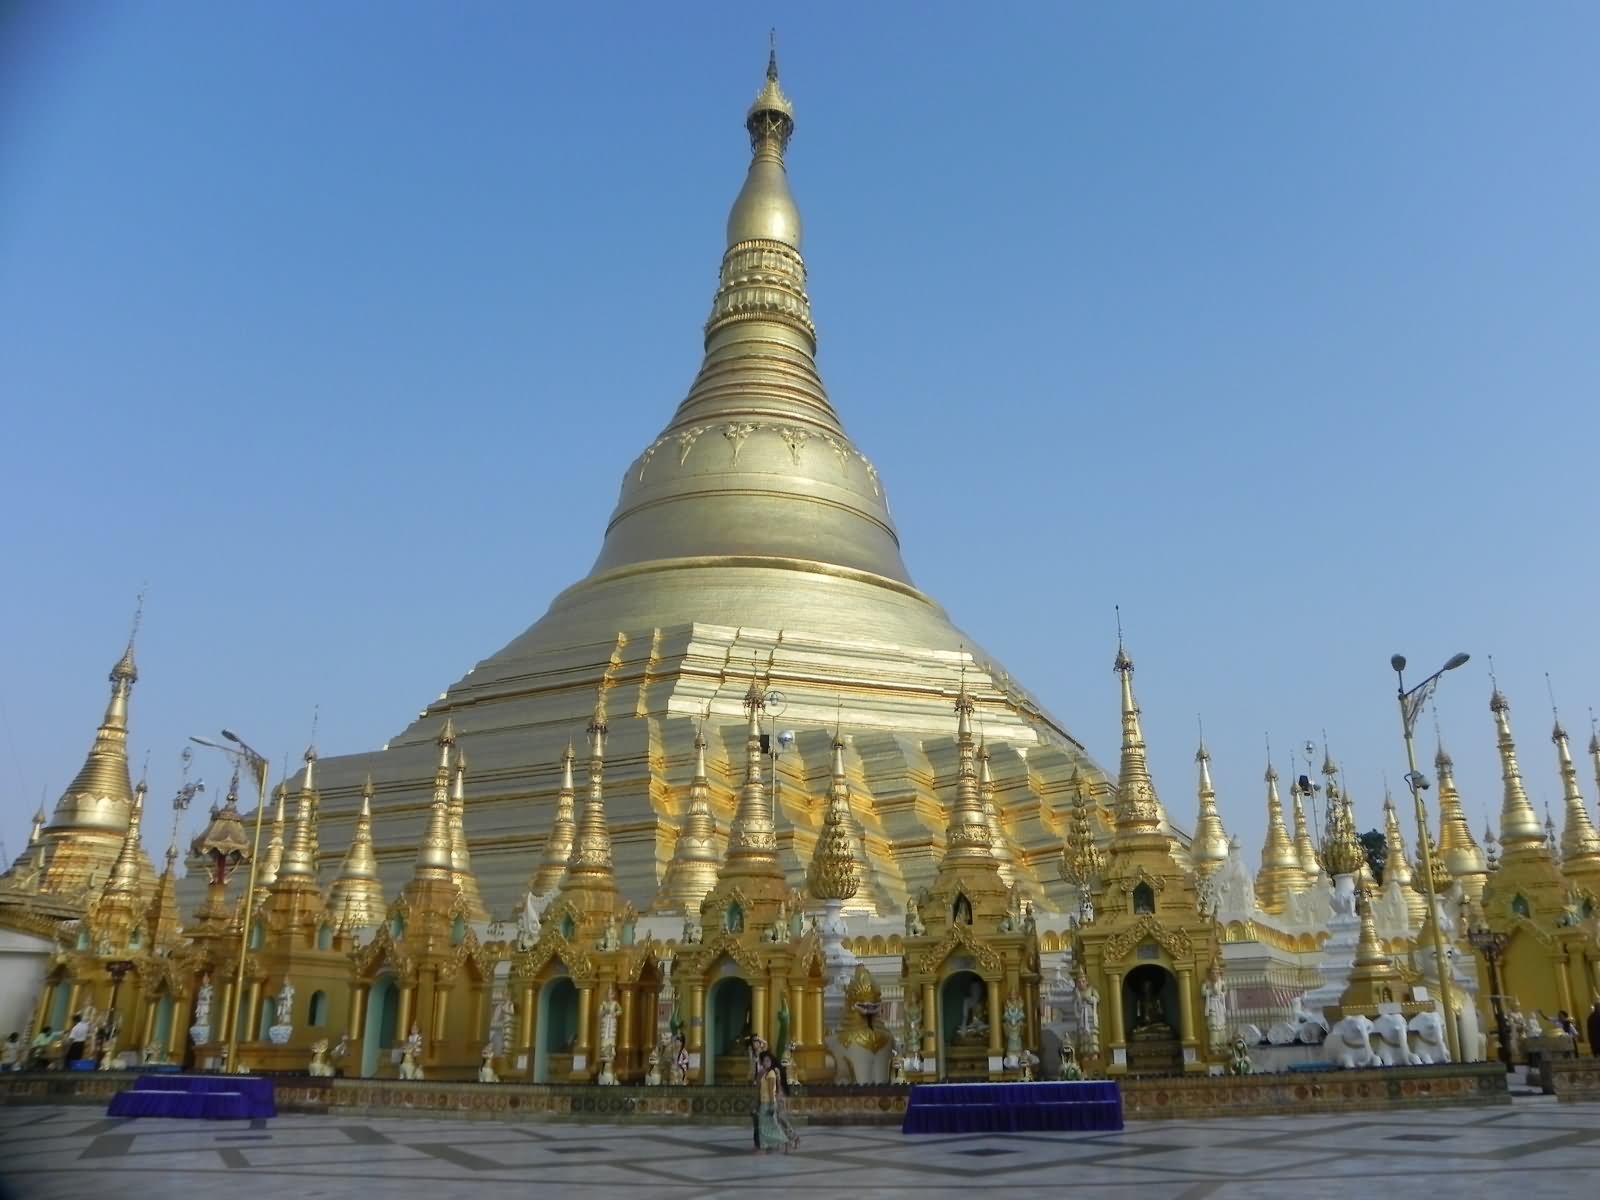 Top Of The Shwedagon Pagoda